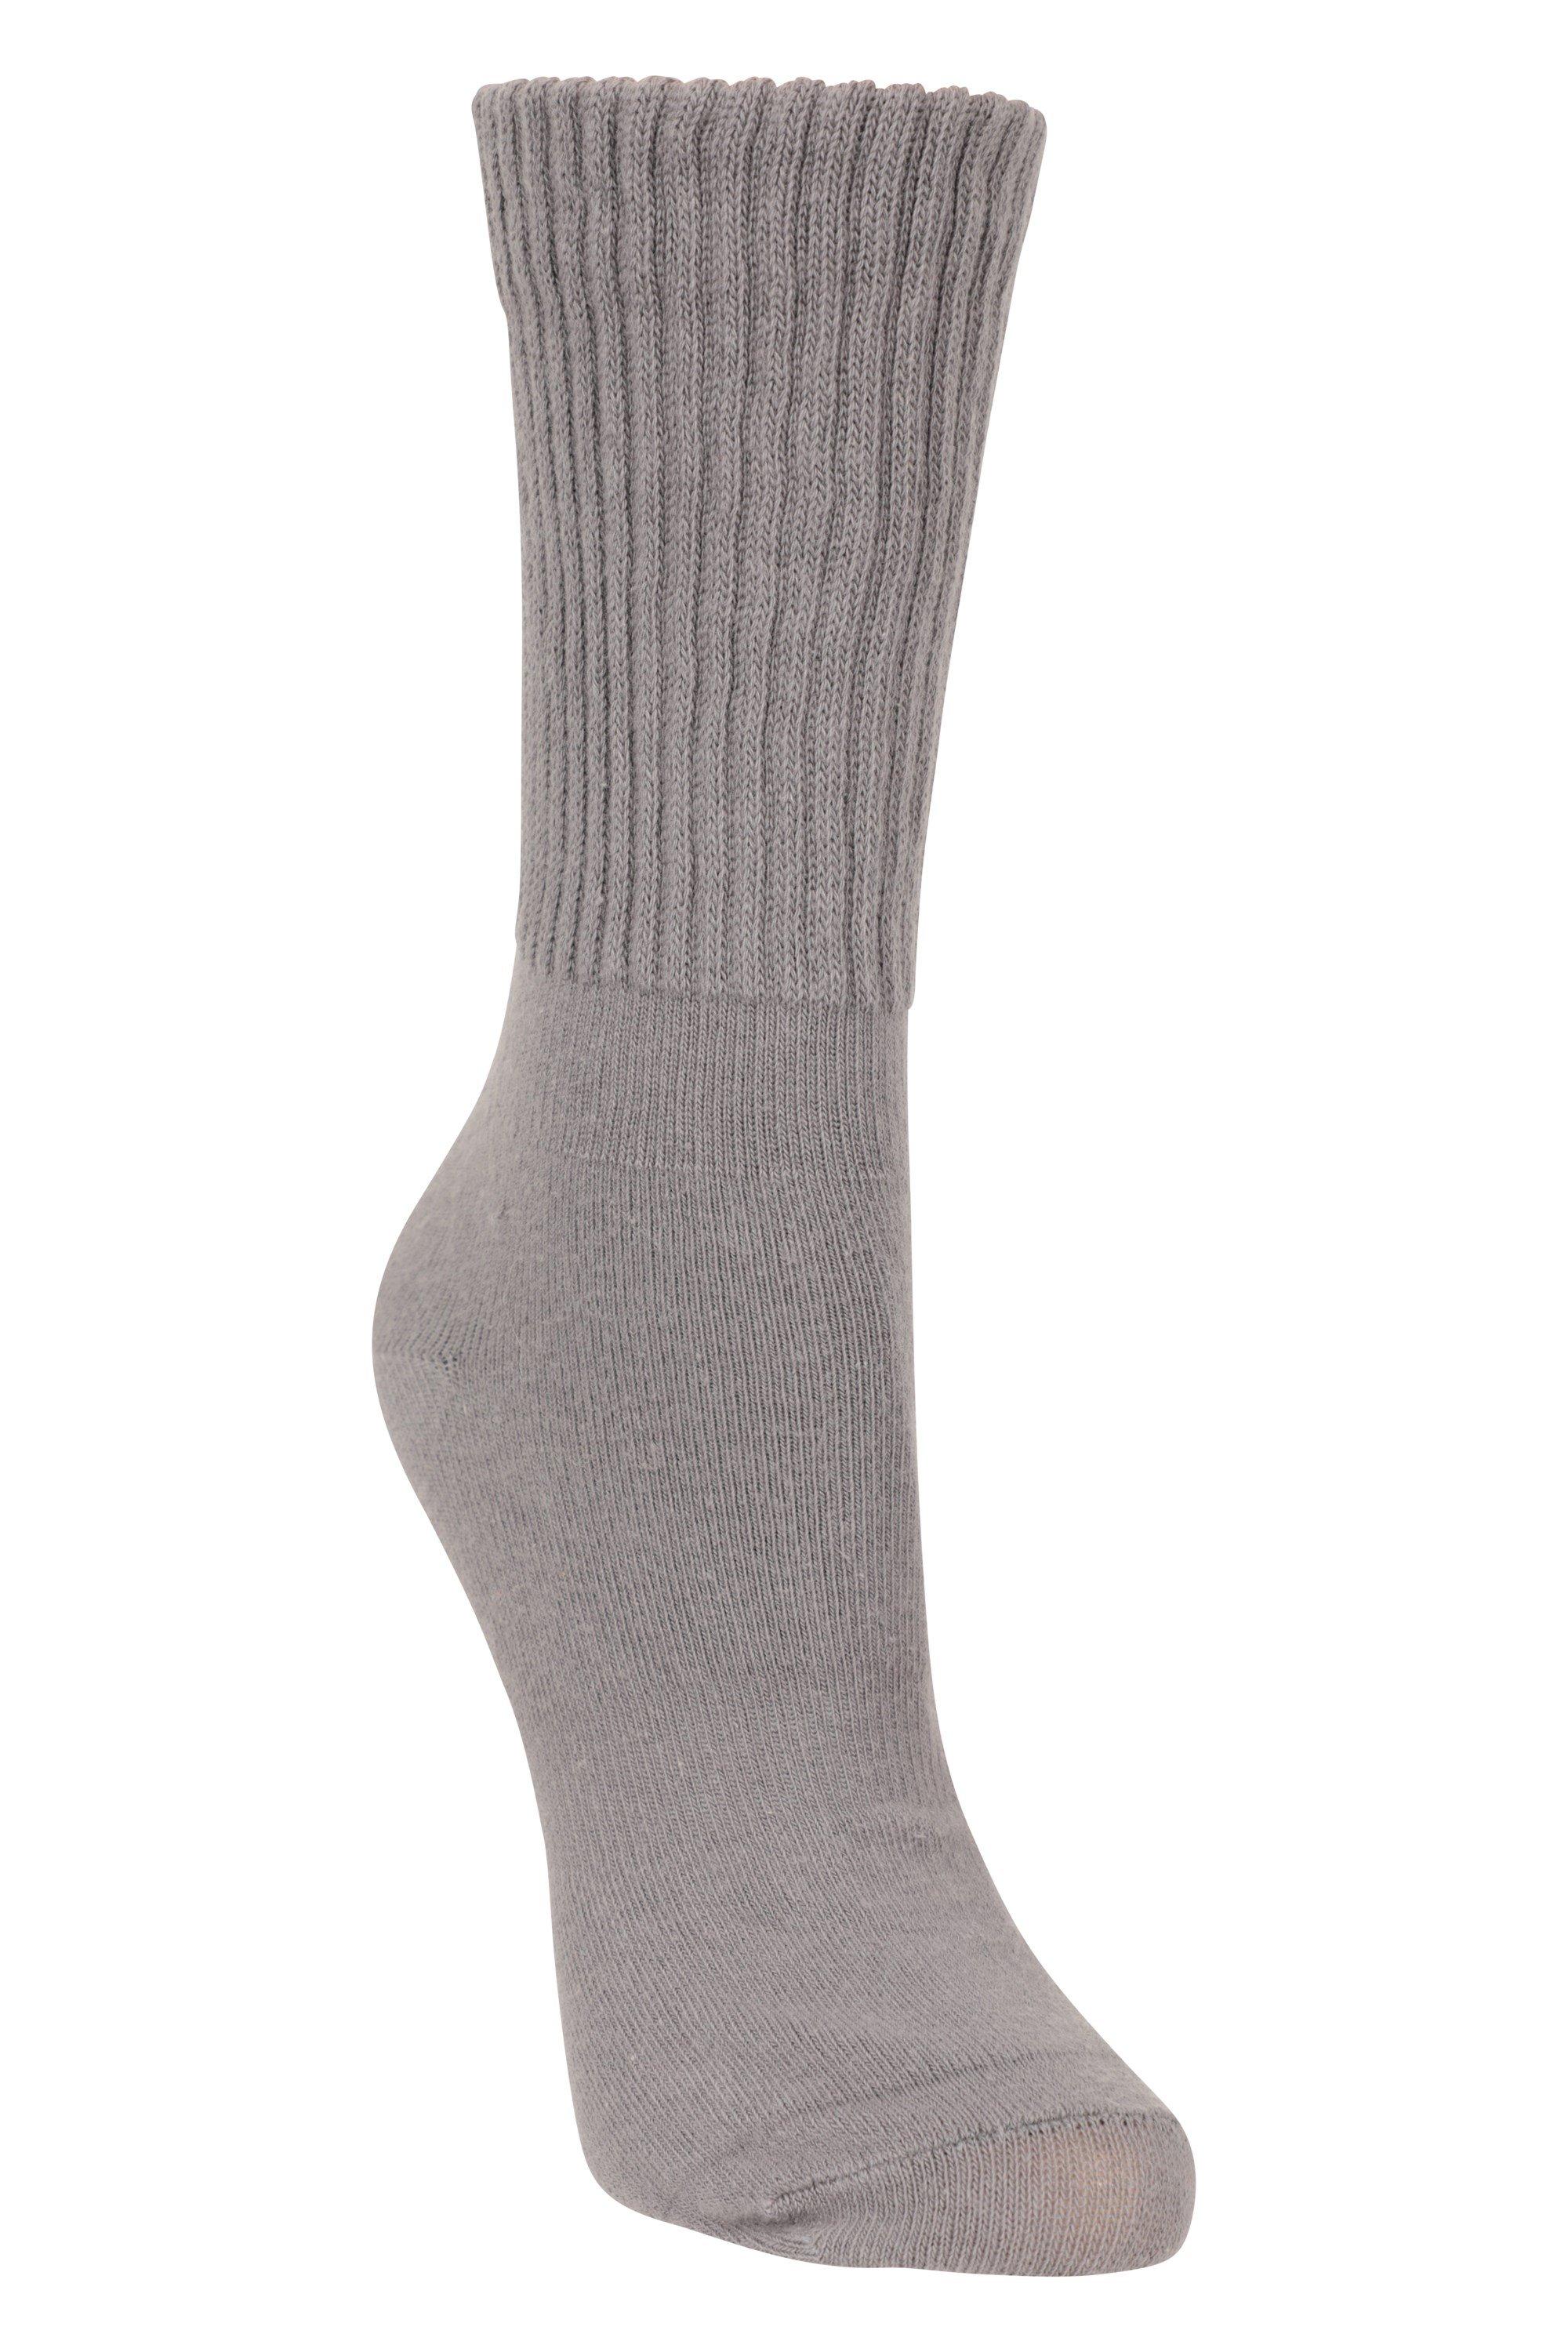 Socks Double Layer  Lightweight Walking Sock